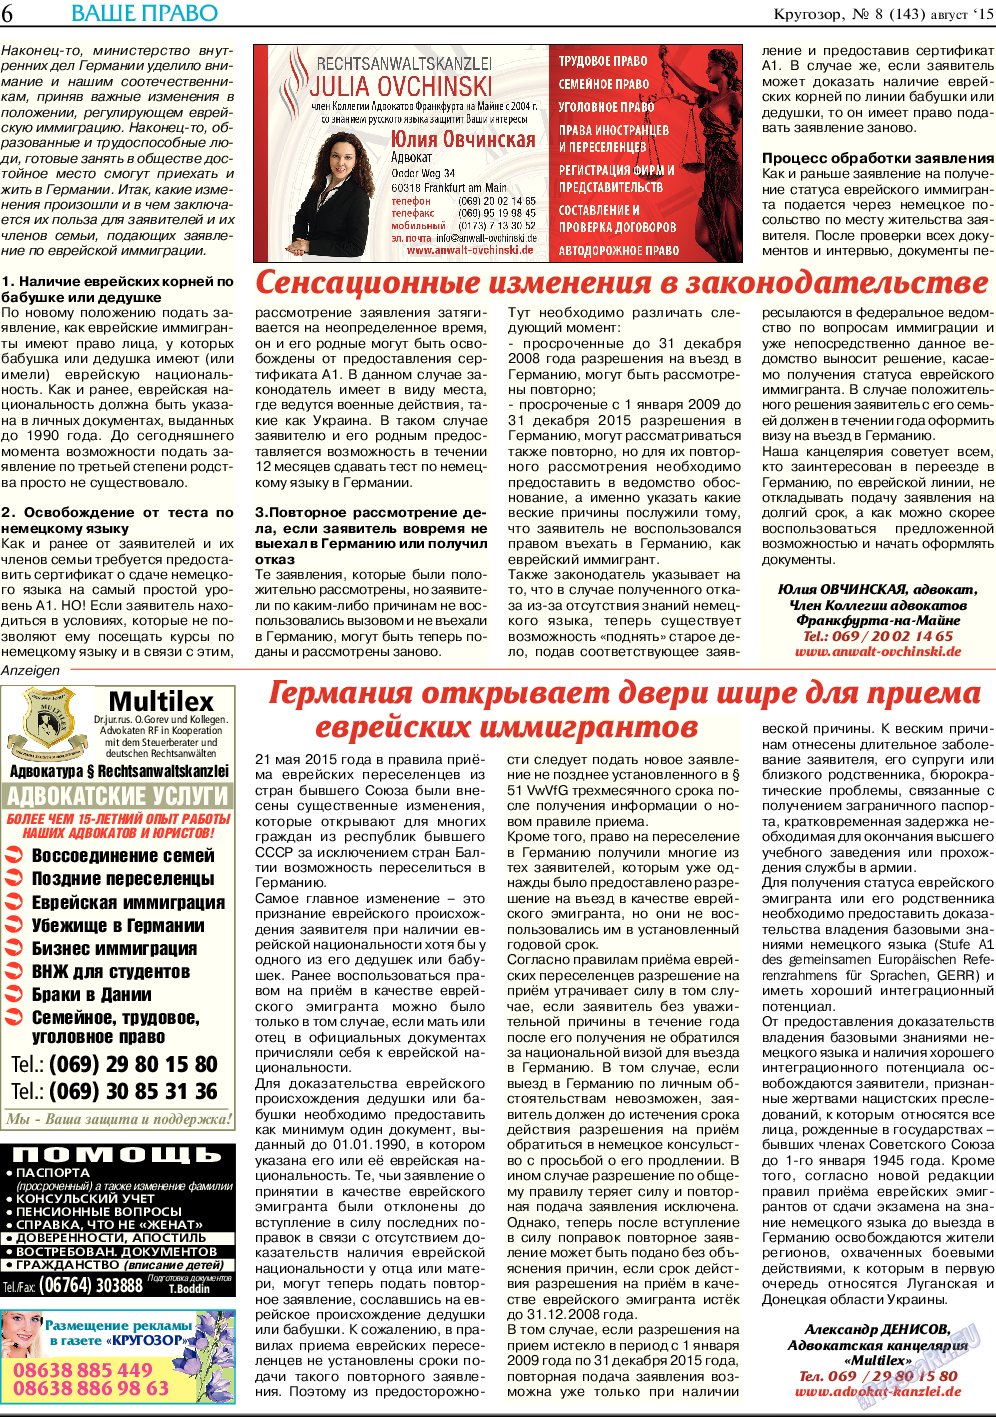 Кругозор, газета. 2015 №8 стр.6